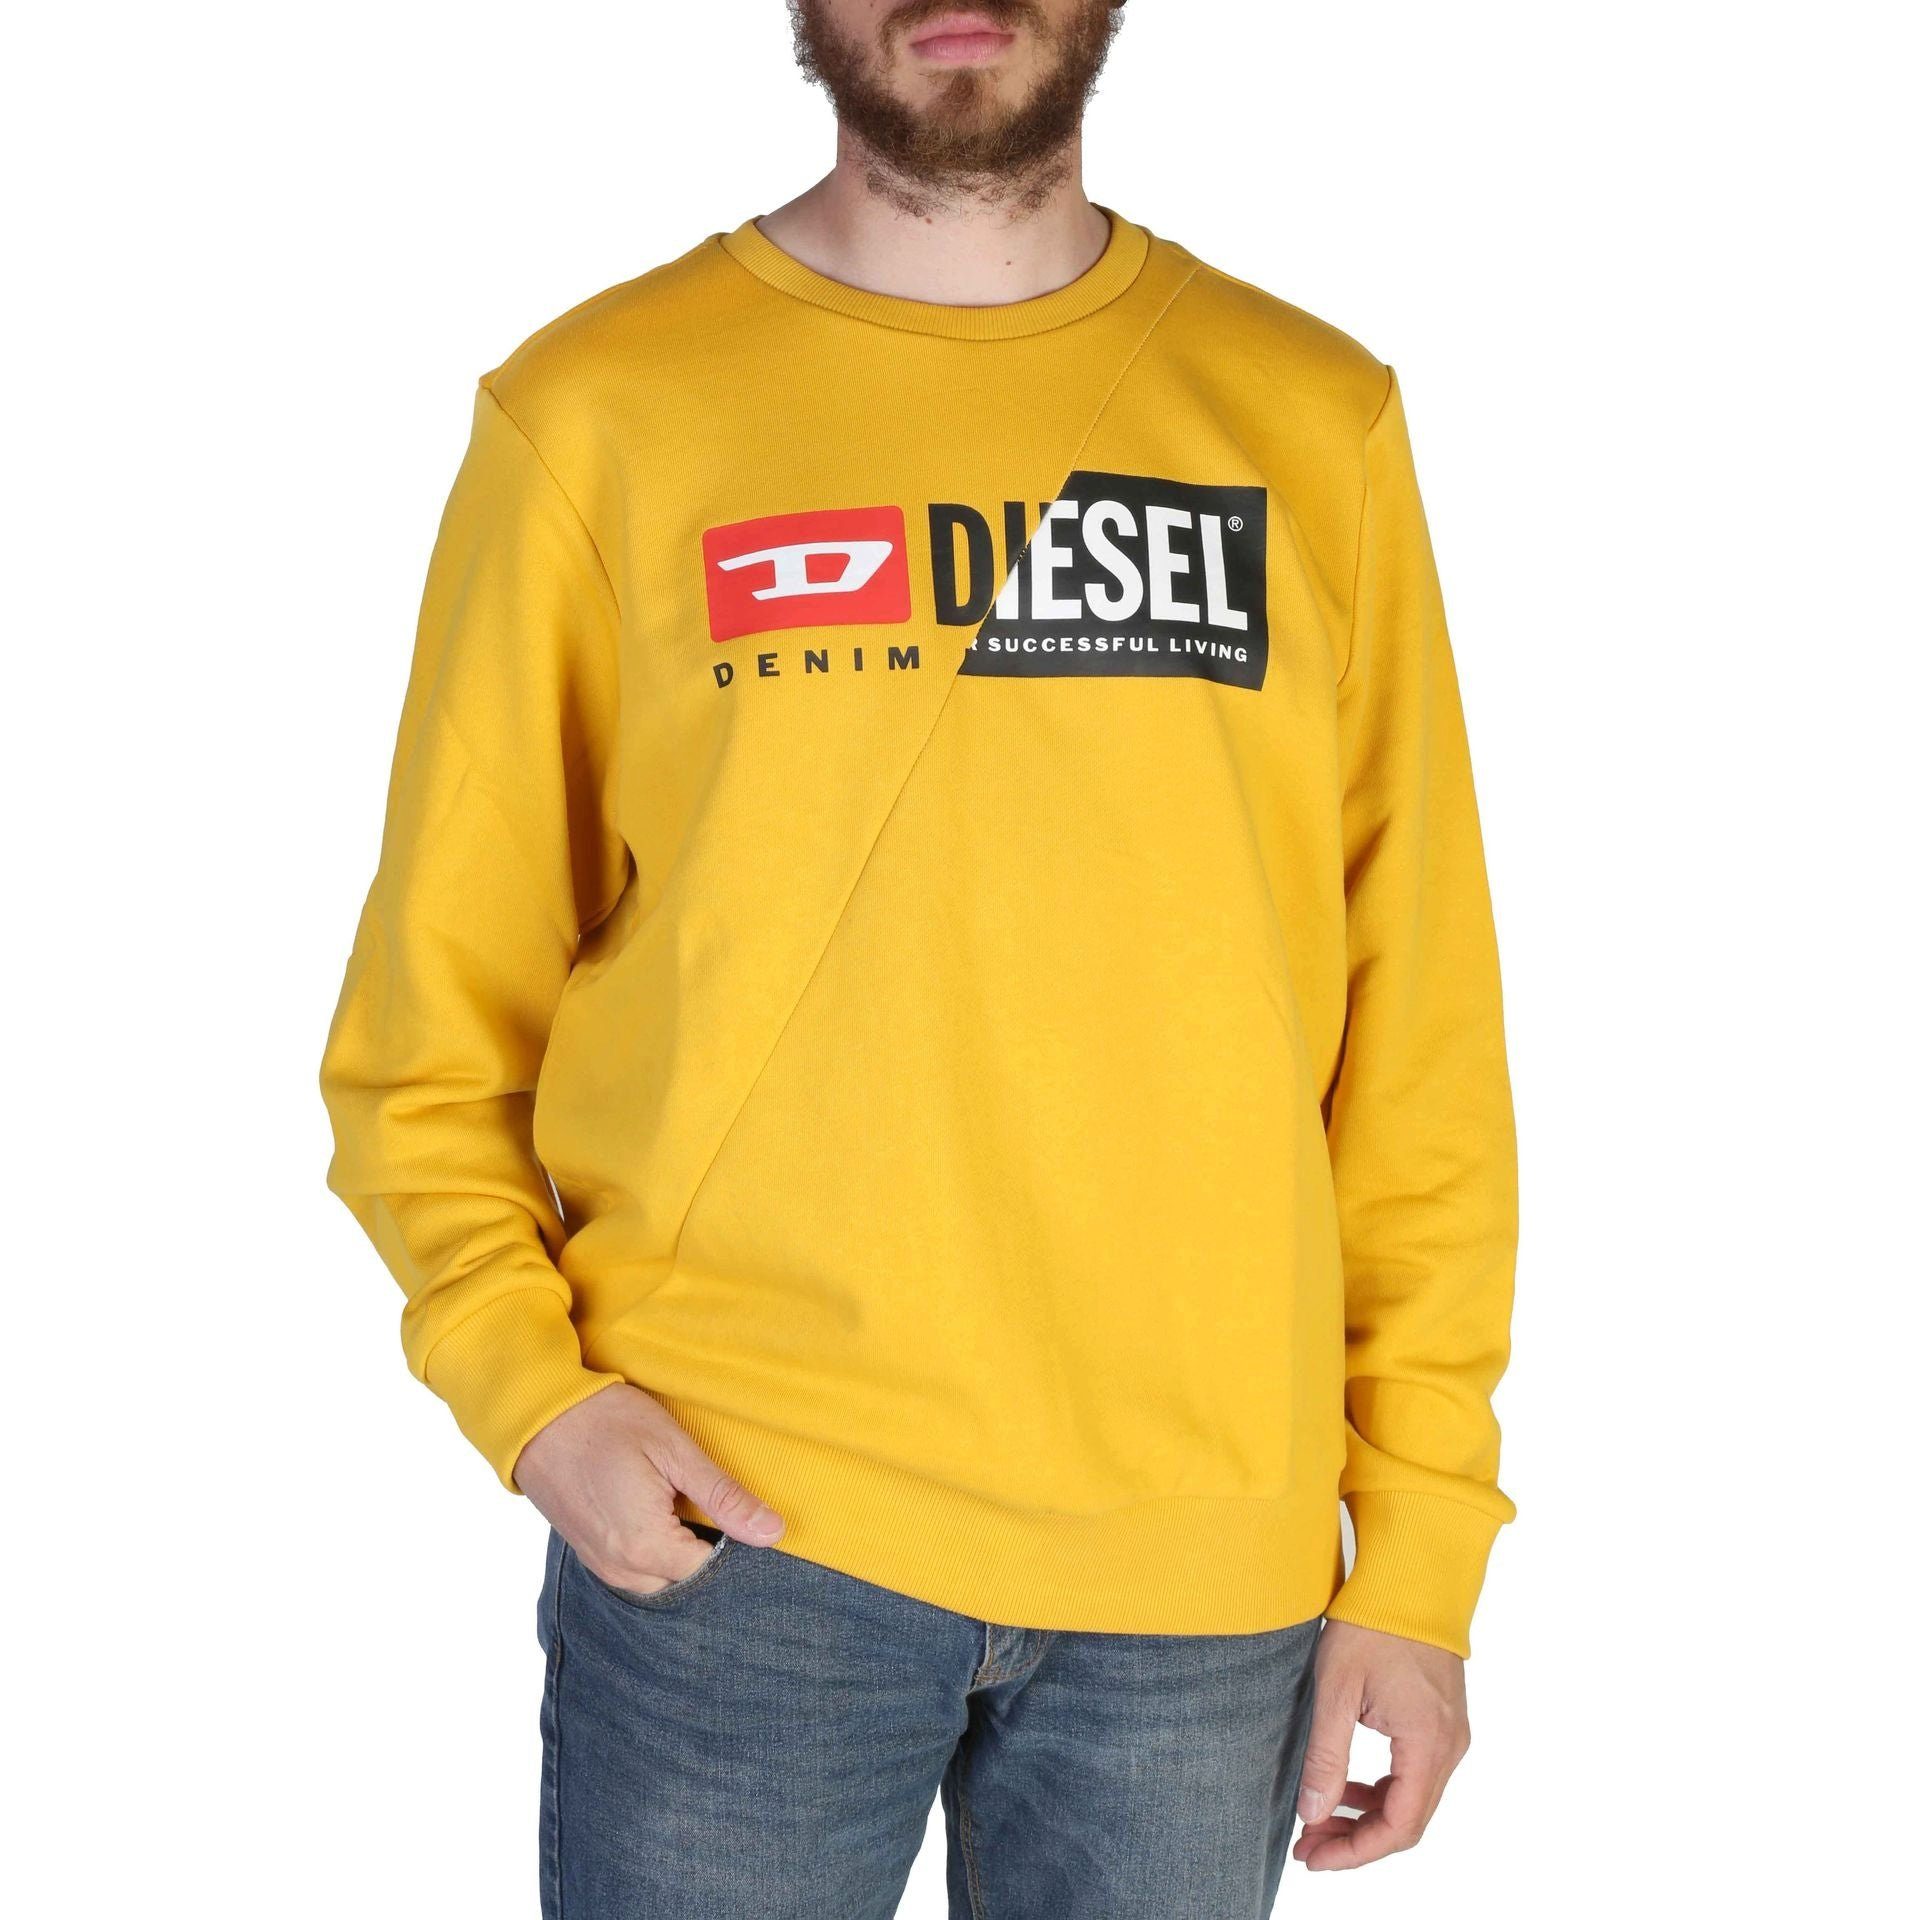 Diesel Sweatshirt Diesel Herren Sweatshirt Frühjahr/Sommer Kollektion, Gelb Komfort und Stil - Ihr neues Diesel Sweatshirt wartet! | Sweatshirts